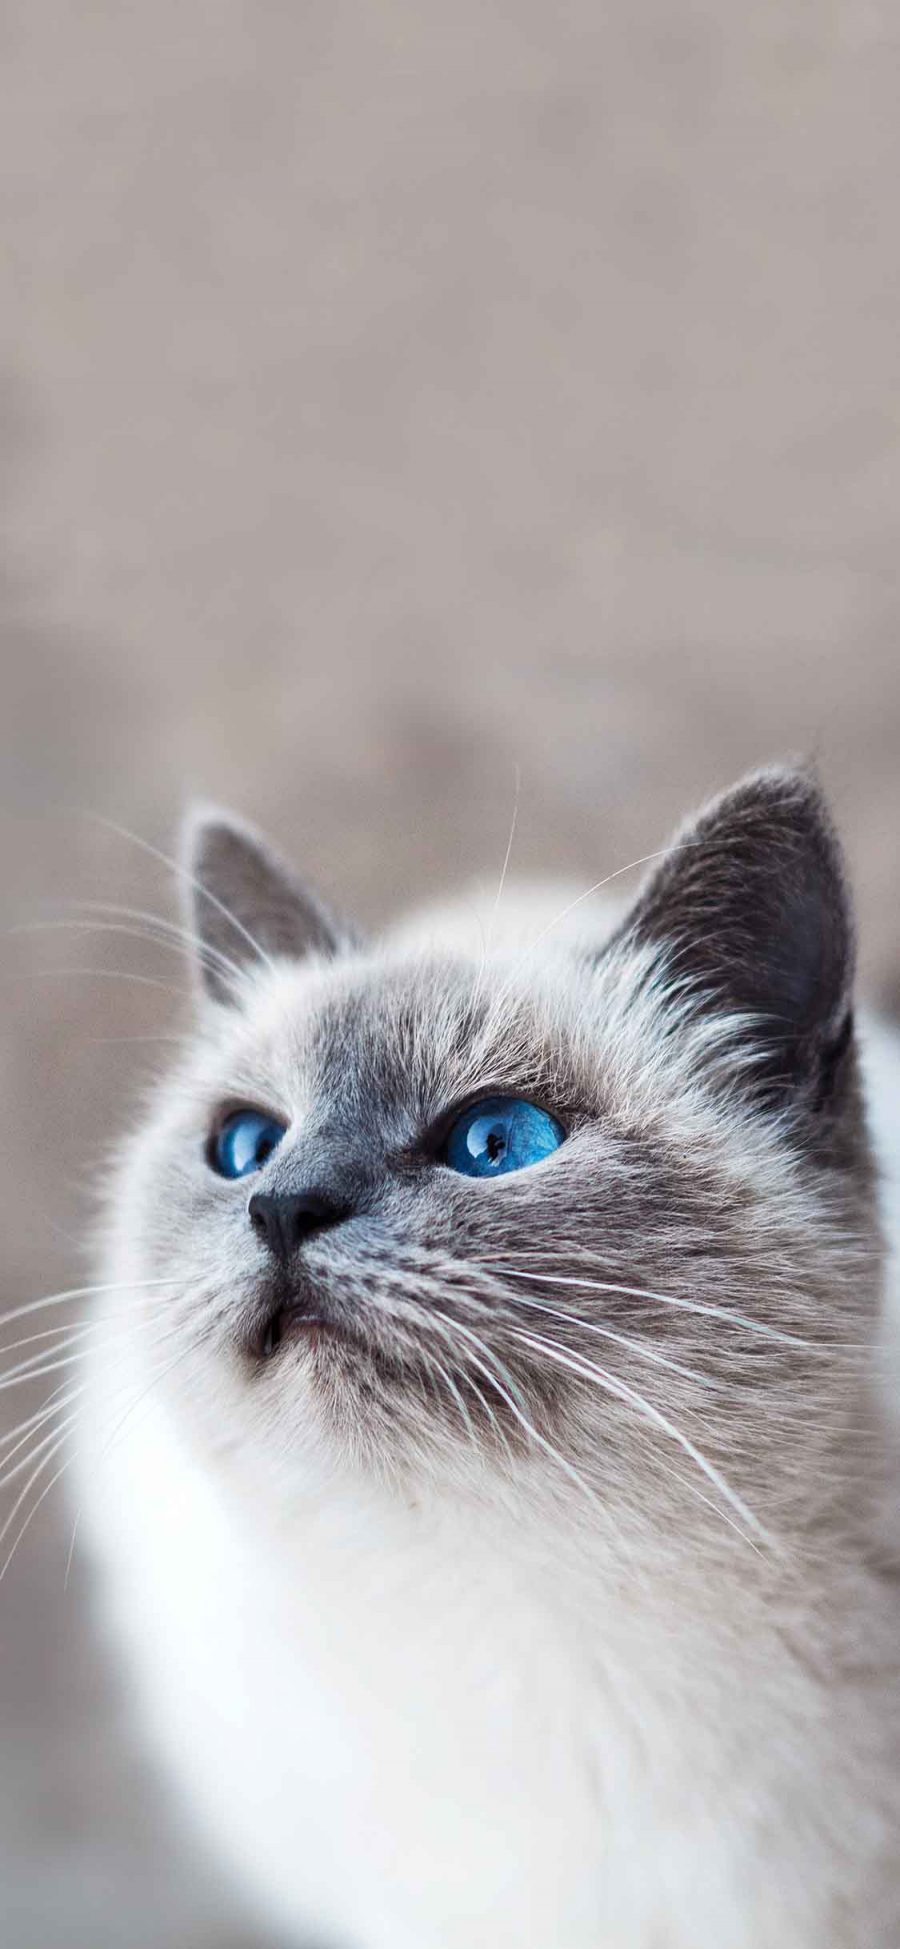 [2436×1125]宠物猫 伯曼猫 缅甸圣猫 蓝瞳 苹果手机壁纸图片